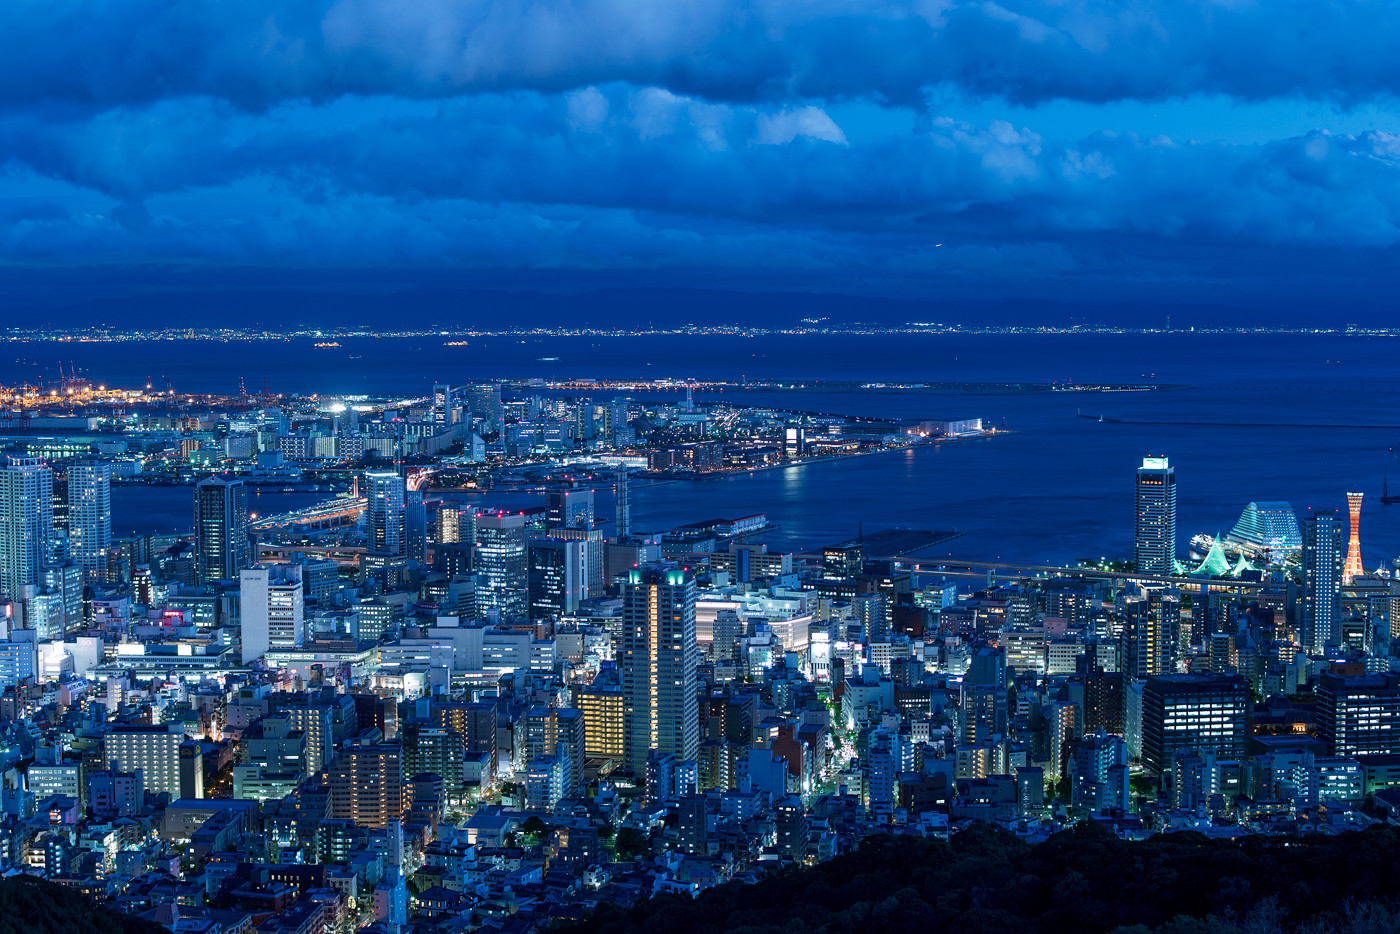 市街地やコンビナートの夜景も撮影したが、メインの被写体は、生まれ育った神戸に近い芦屋浜にある高層住宅群（芦屋浜シーサイドタウン）と決めていた。